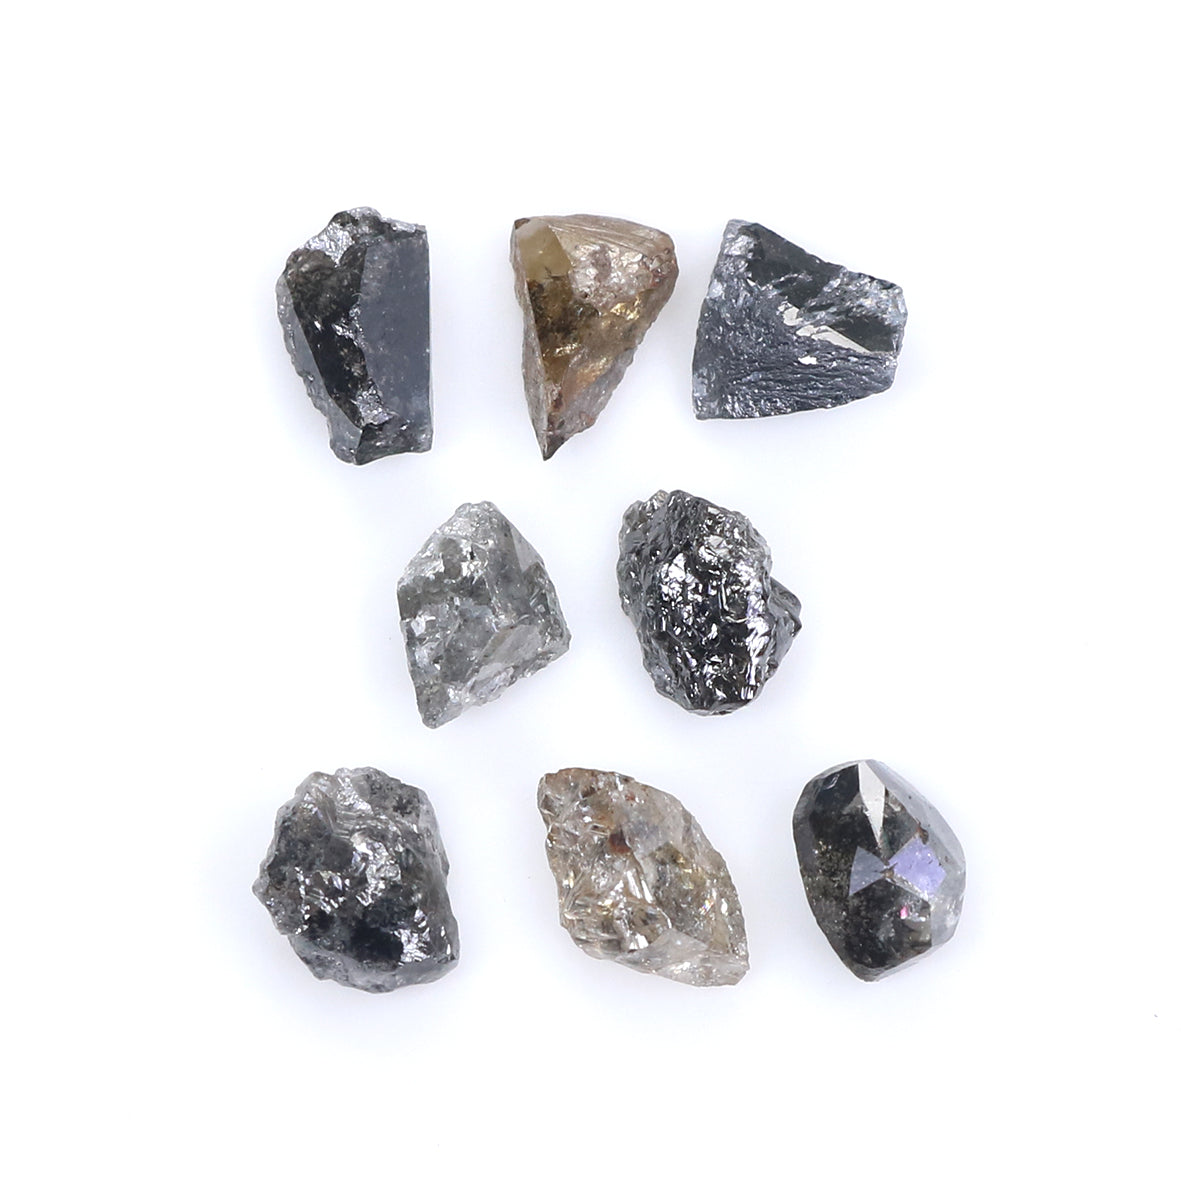 Natural Loose Rough Salt And Pepper Diamond Black Grey Color 4.54 CT 5.92 MM Rough Facet Shape Diamond L2053